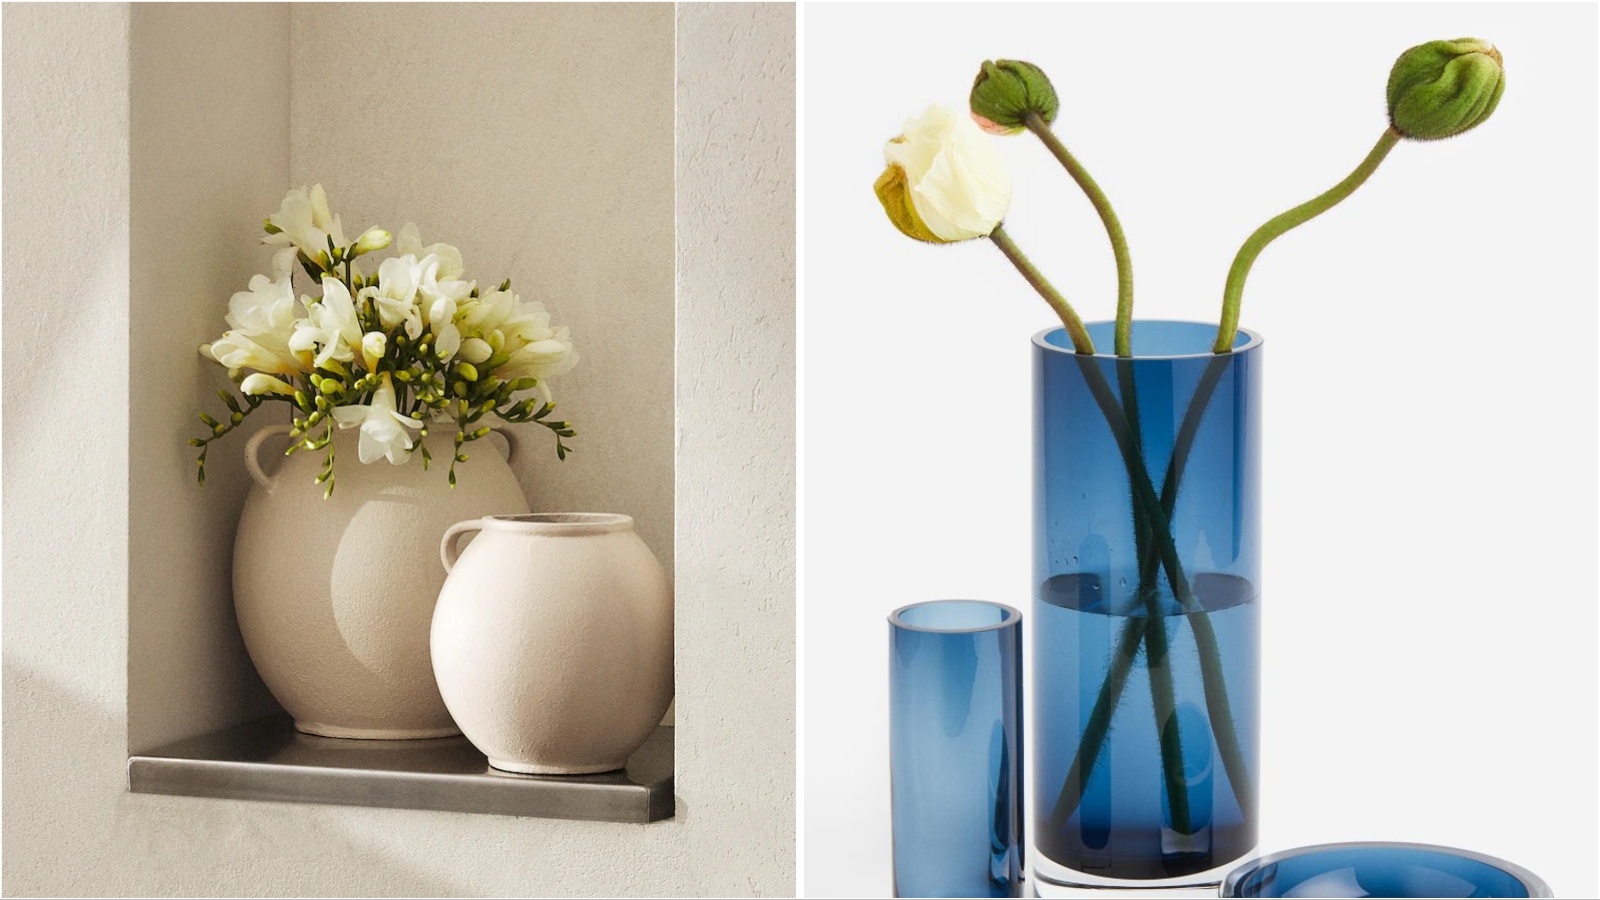 Journal finds: Dekorativne vaze za cveće koje će oplemeniti svaki enterijer ovog leta